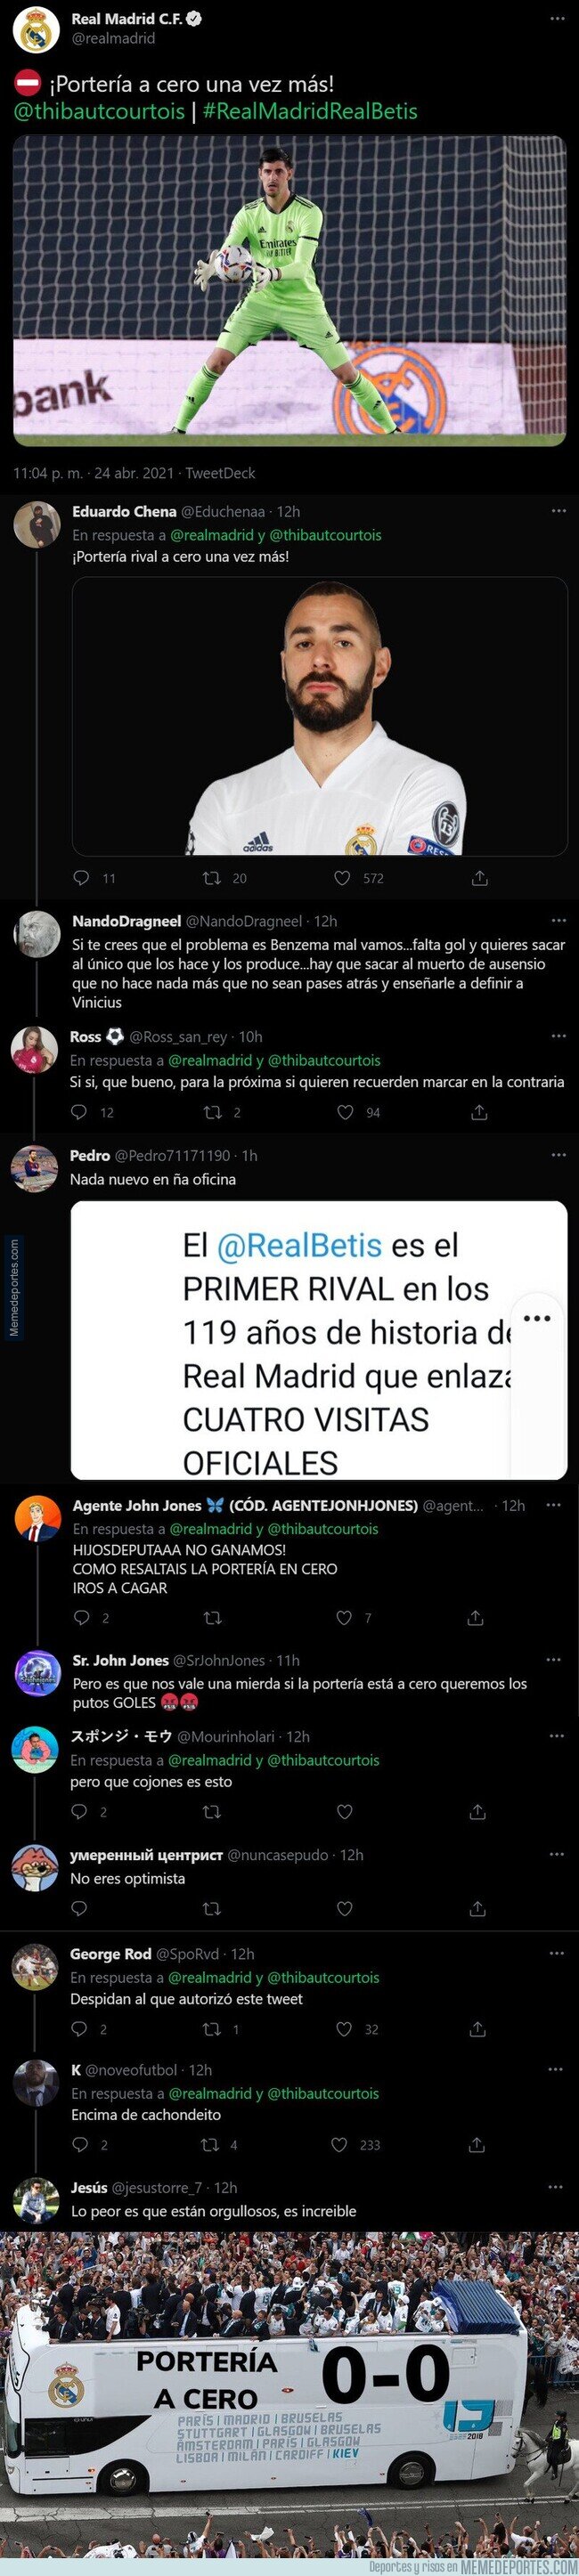 1133566 - El polémico tuit del Real Madrid tras terminar el 0-0 contra el Real Betis que ha cabreado a todos los madridistas